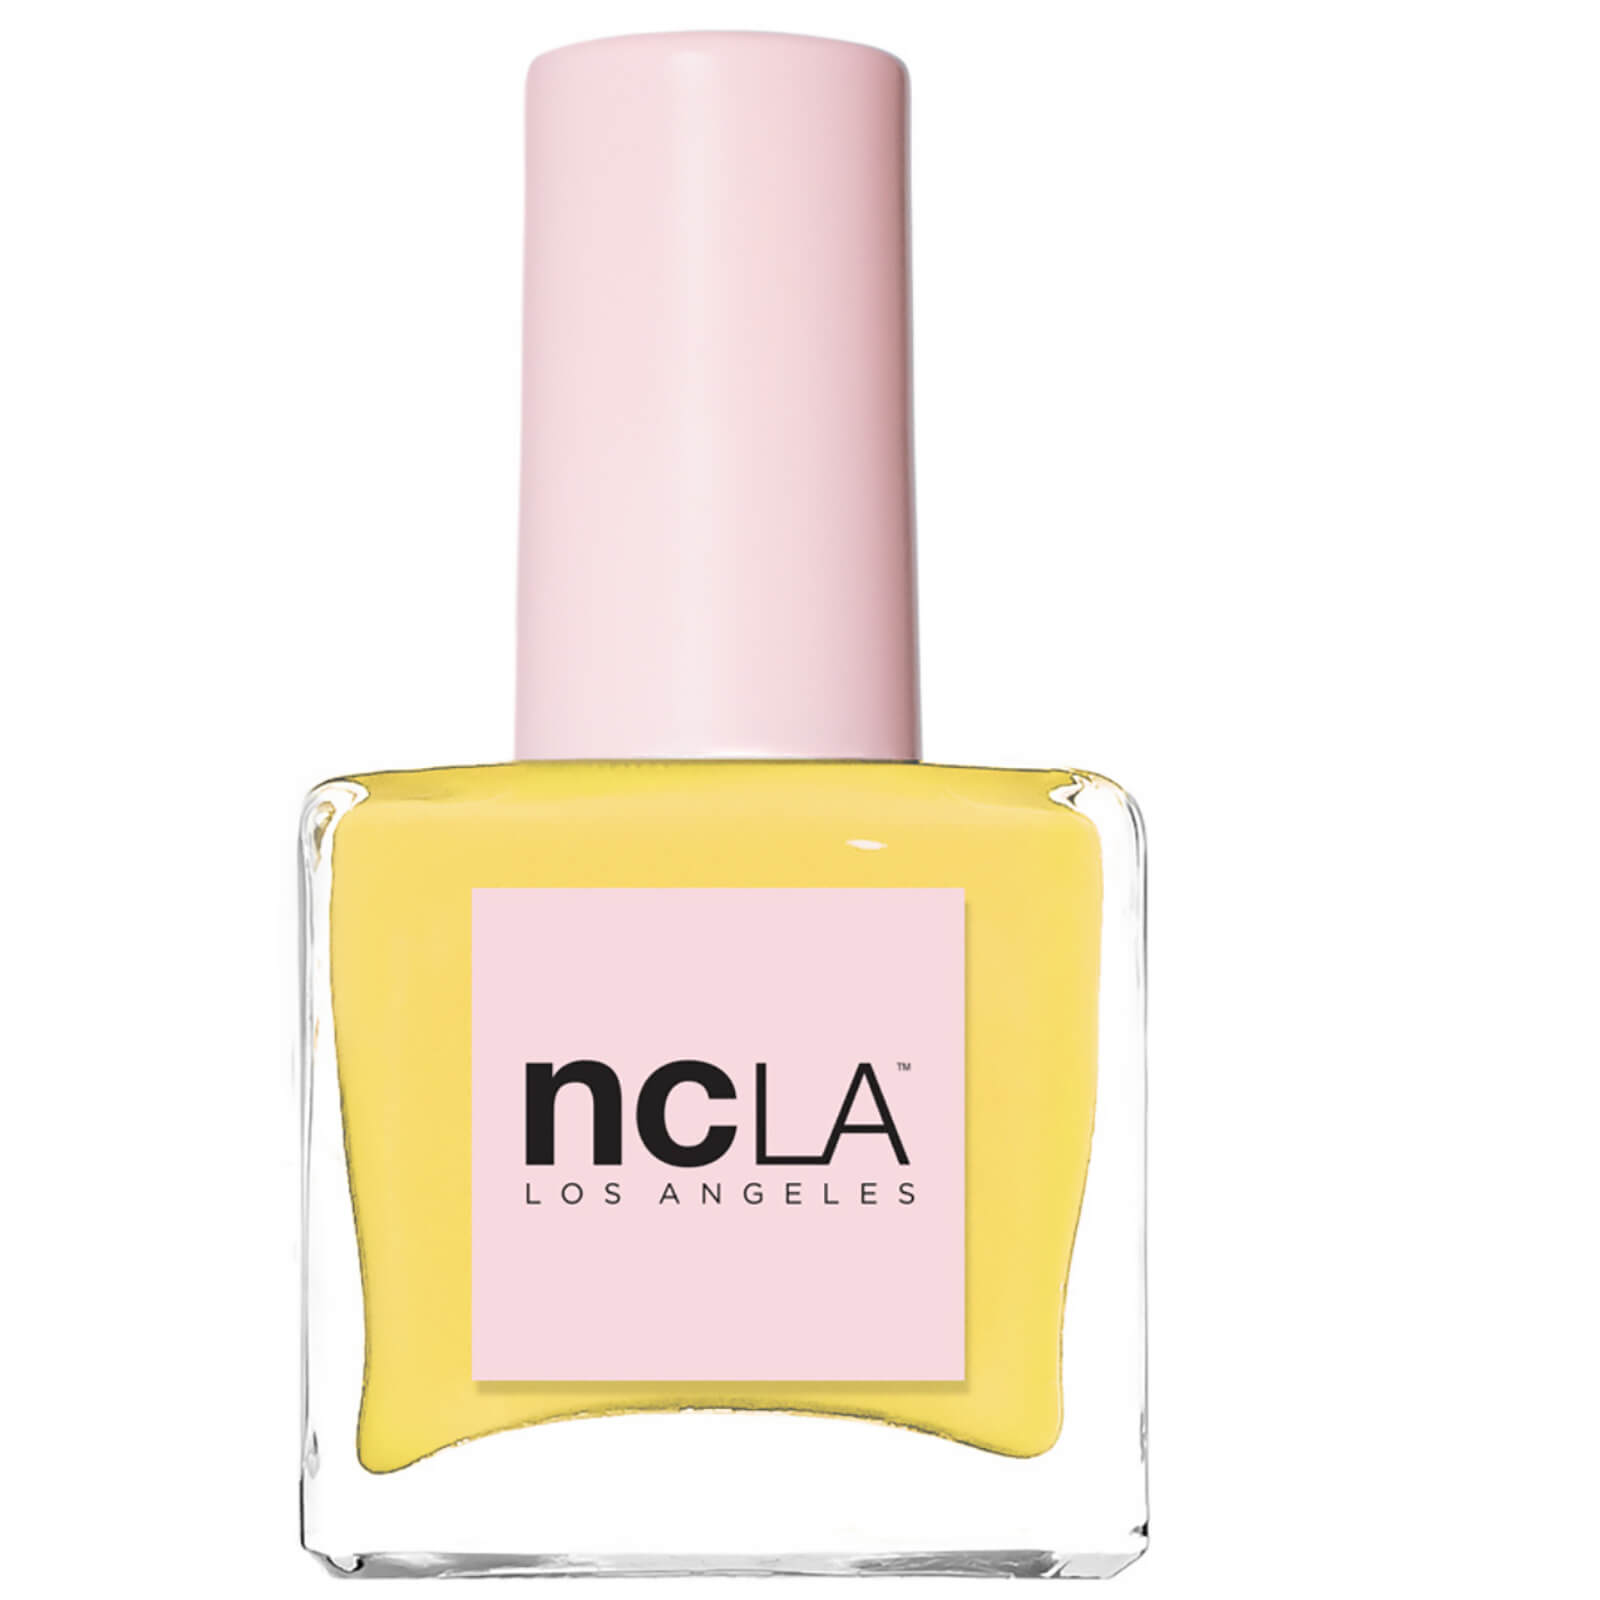 NCLA Beauty Vegan Nail Polish (Various Shades) - Tennis Anyone?